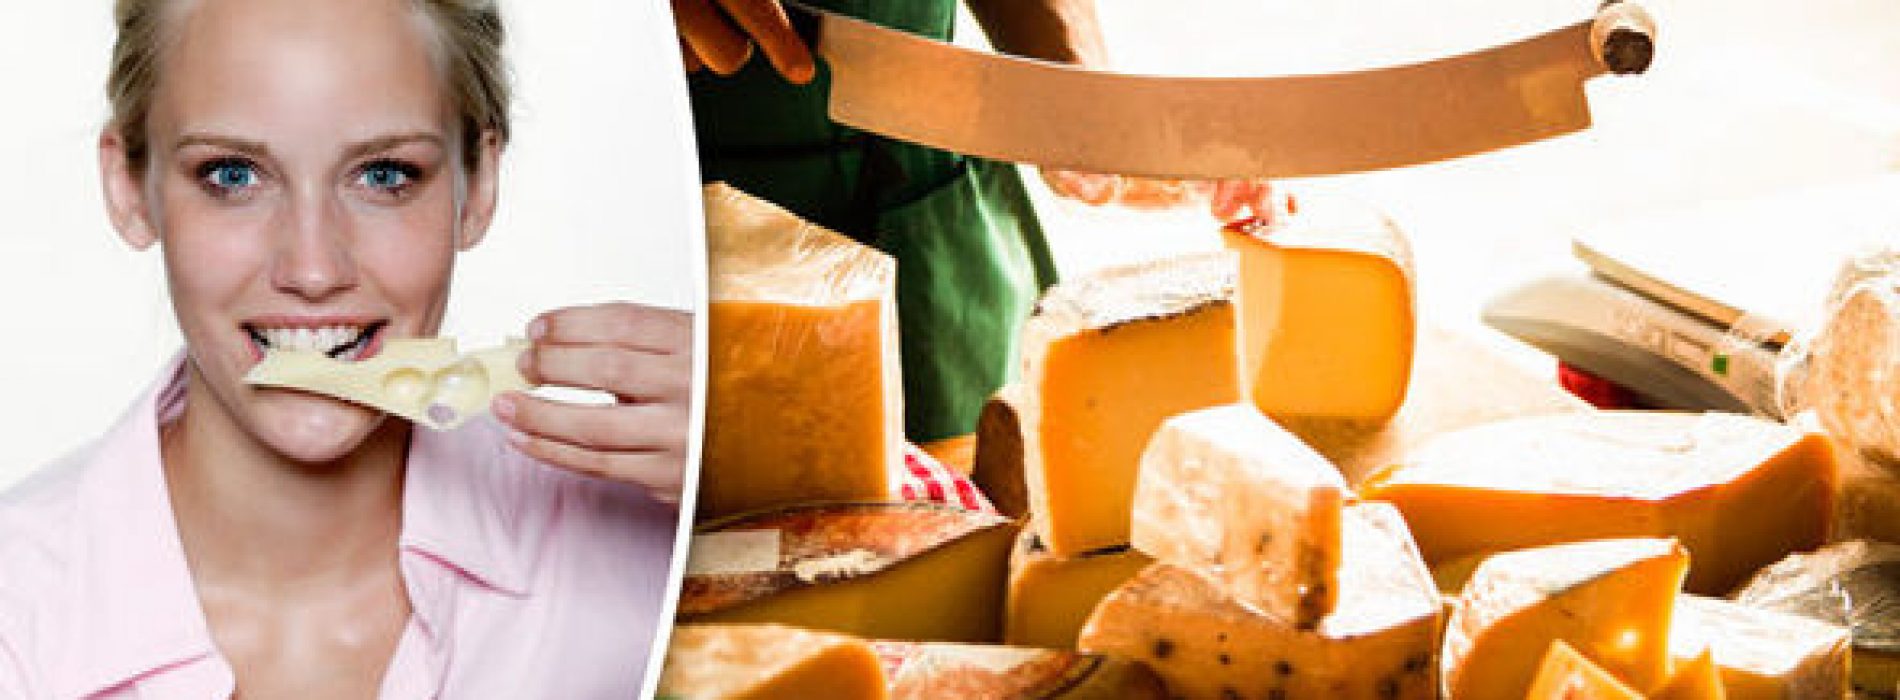 Het eten van kaas verhoogt het cholesterol niet en verhoogt het risico op een hartaanval niet … wetenschappers verbluft om de lang begraven waarheid te leren